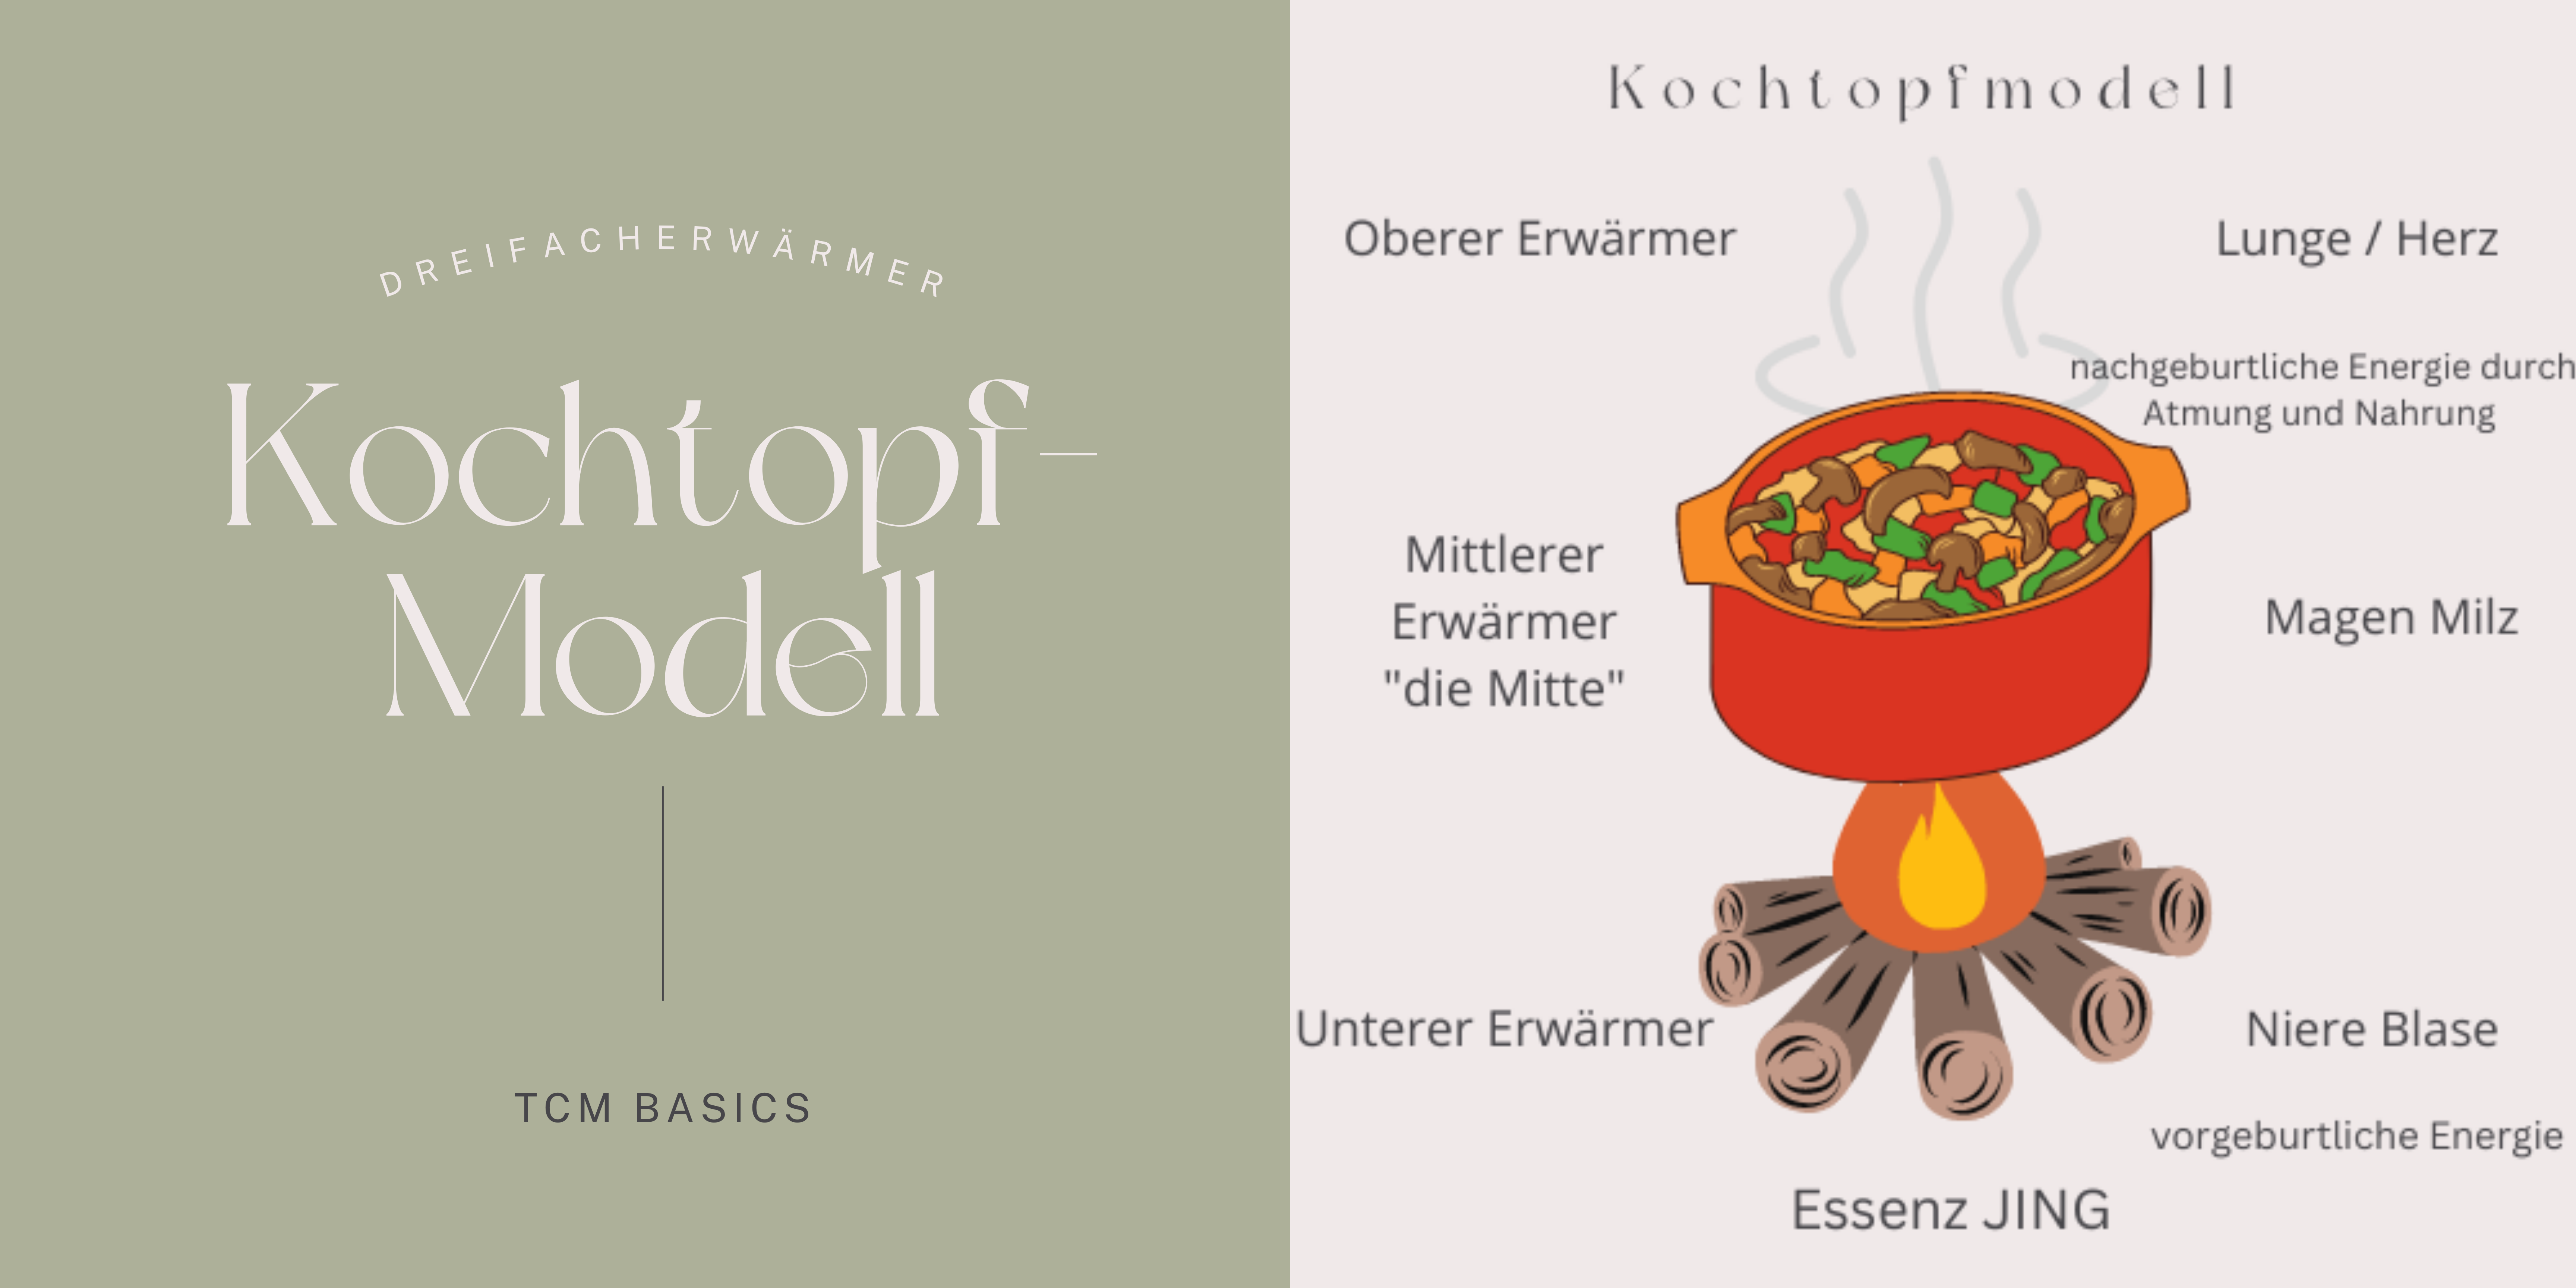 Das Kochtopf-Modell